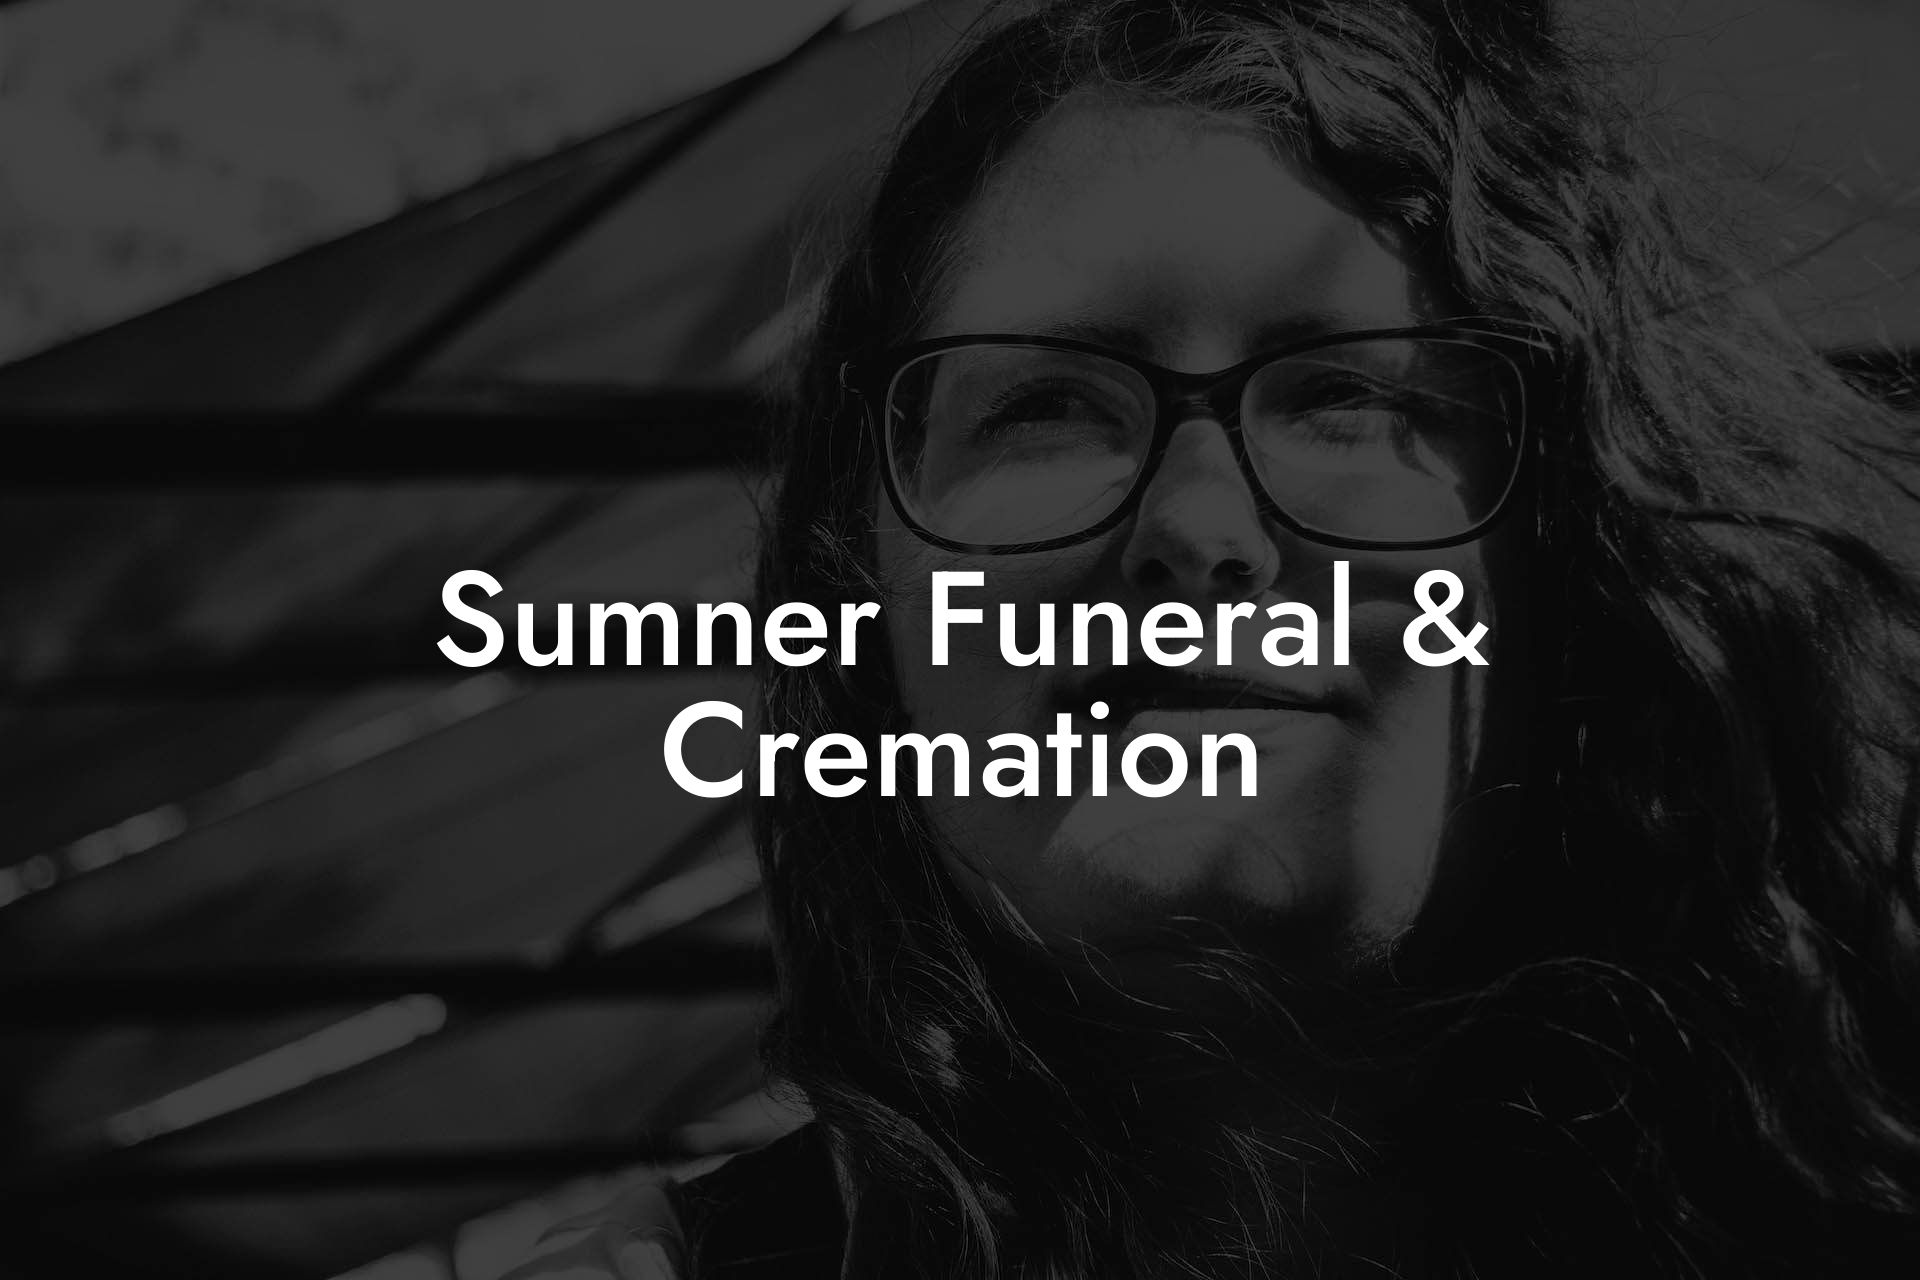 Sumner Funeral & Cremation